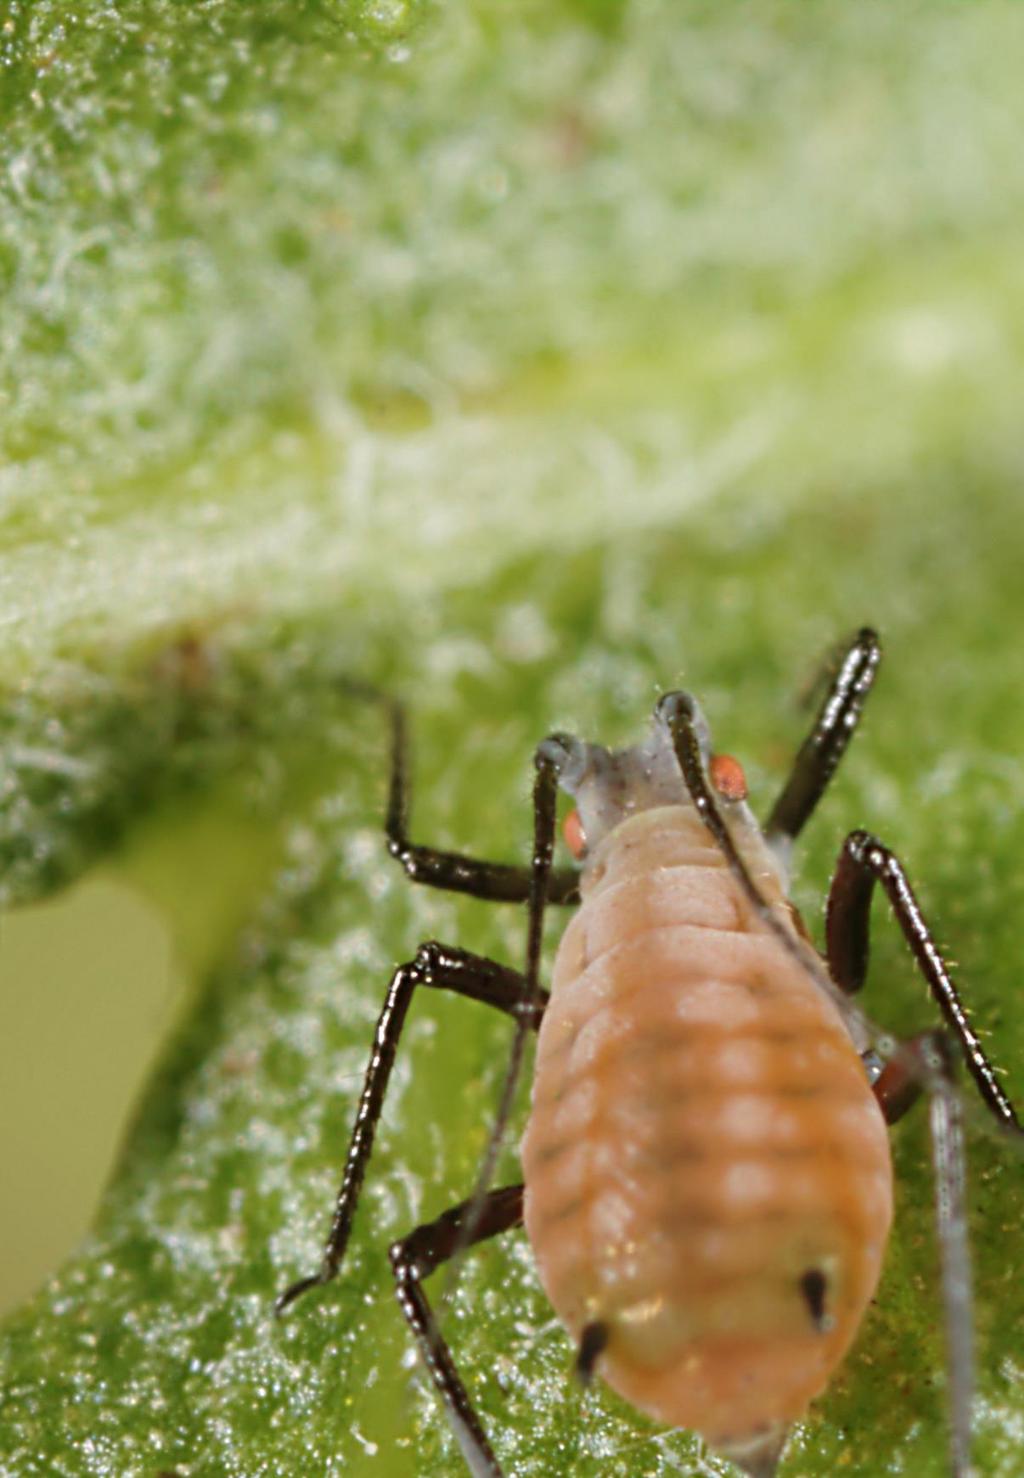 2 BLATTLAUS Symptome Auch Blattläuse gehören zu den häufig auftretenden Schädlingen. Erkennbar sind die kleinen Biester meistens erst, wenn sie in größerer Anzahl auftauchen.